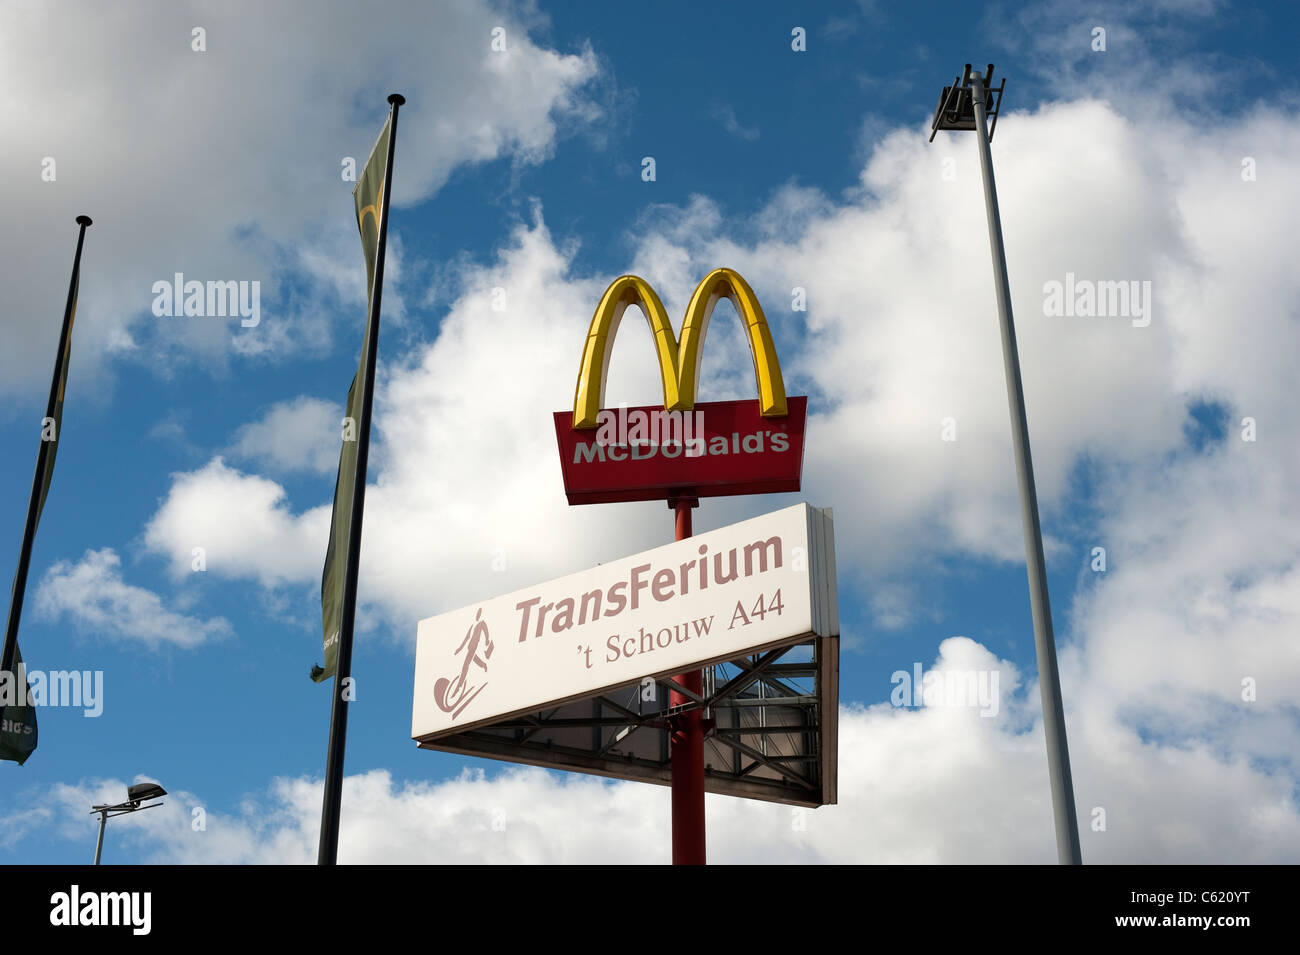 McDonald's Transferium Leiden Nederland Paesi Bassi Olanda Foto Stock